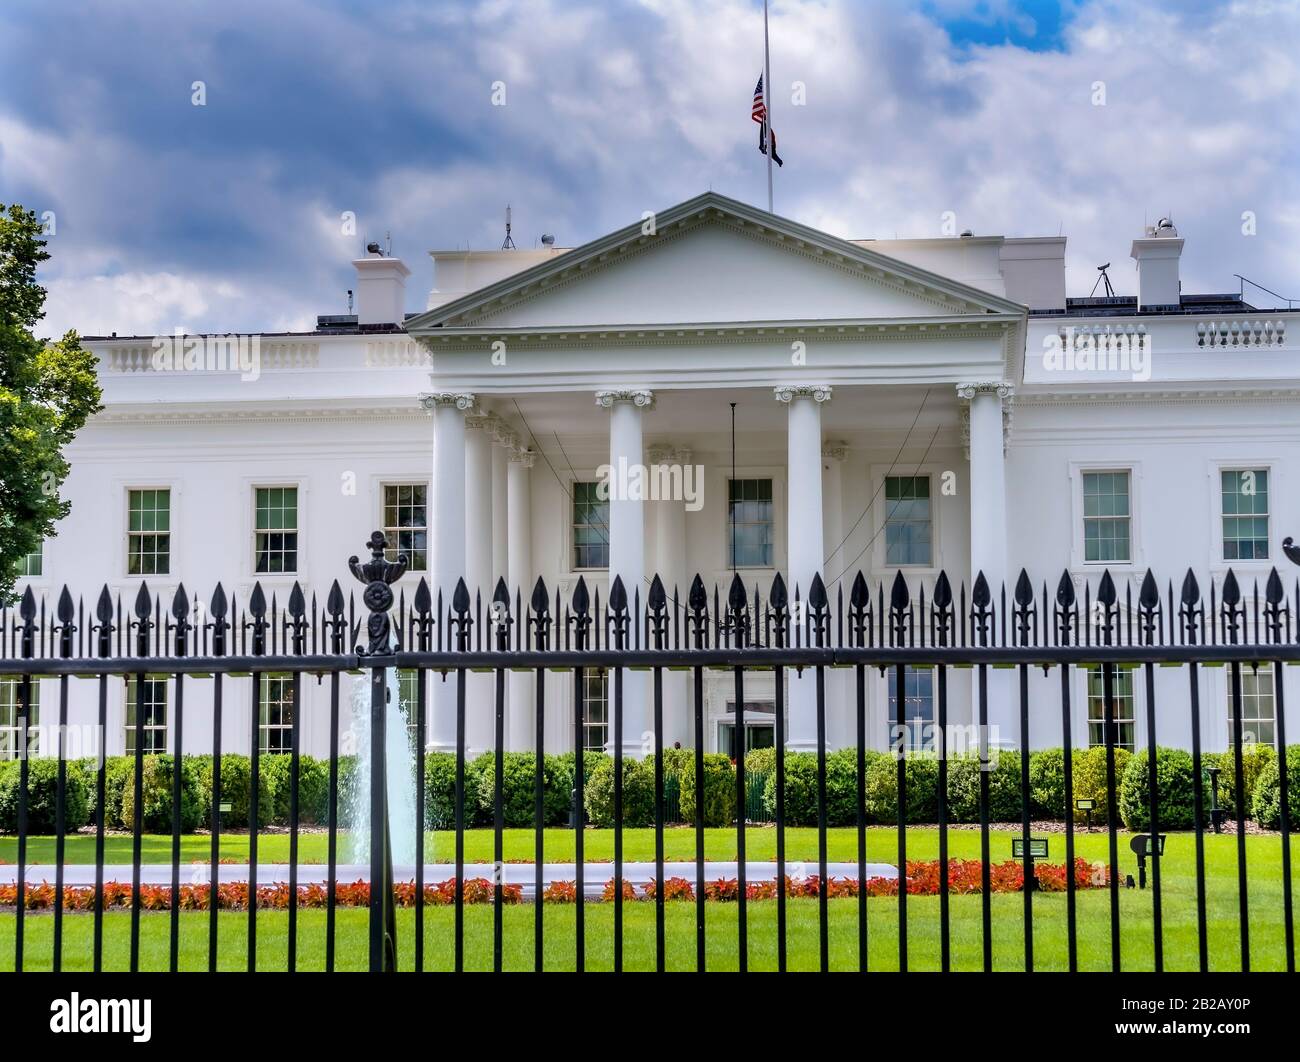 Black Fence Presidential White House Pennsylvania Ave Washington DC. Stock Photo